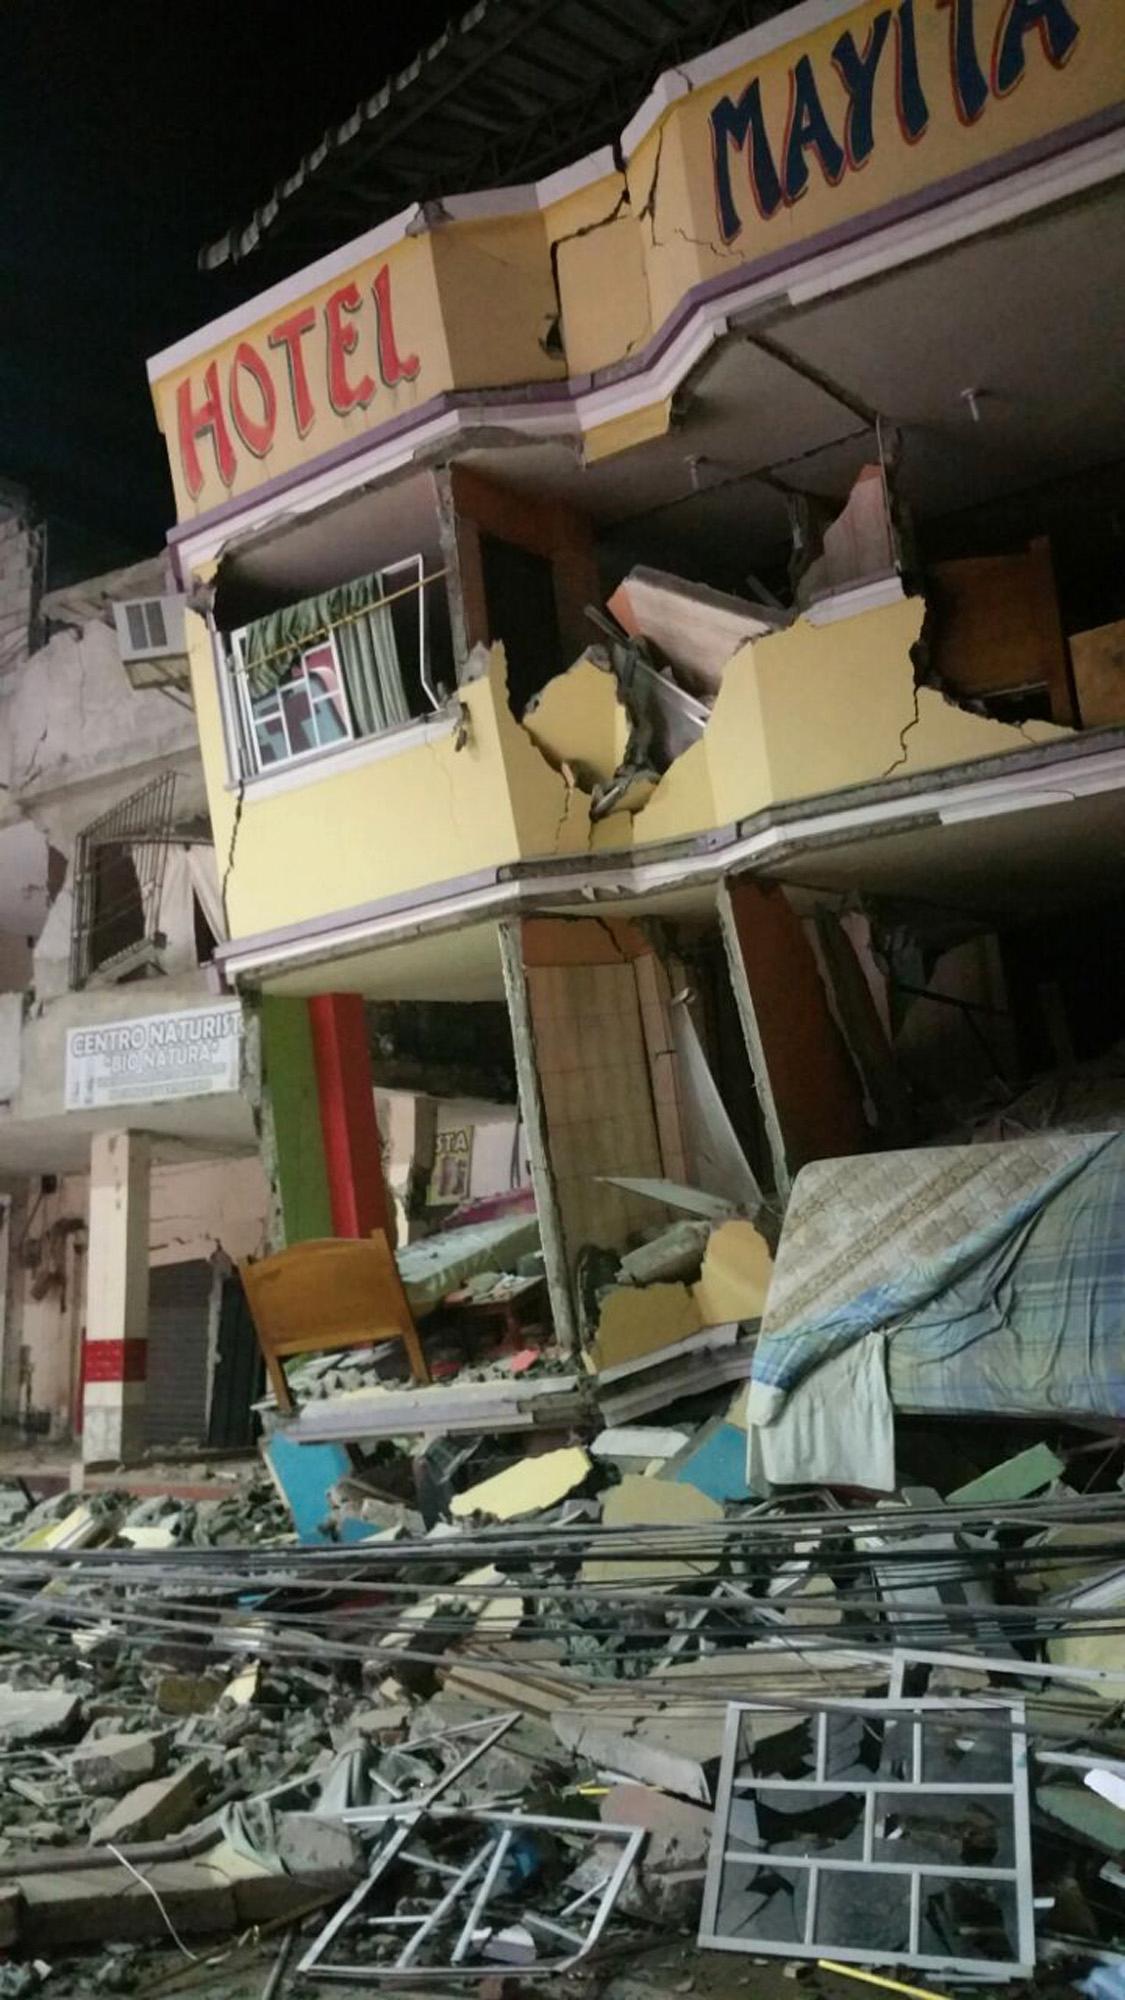 Ett hotell har nästan helt rasat ihop i Manta, Ecuador.